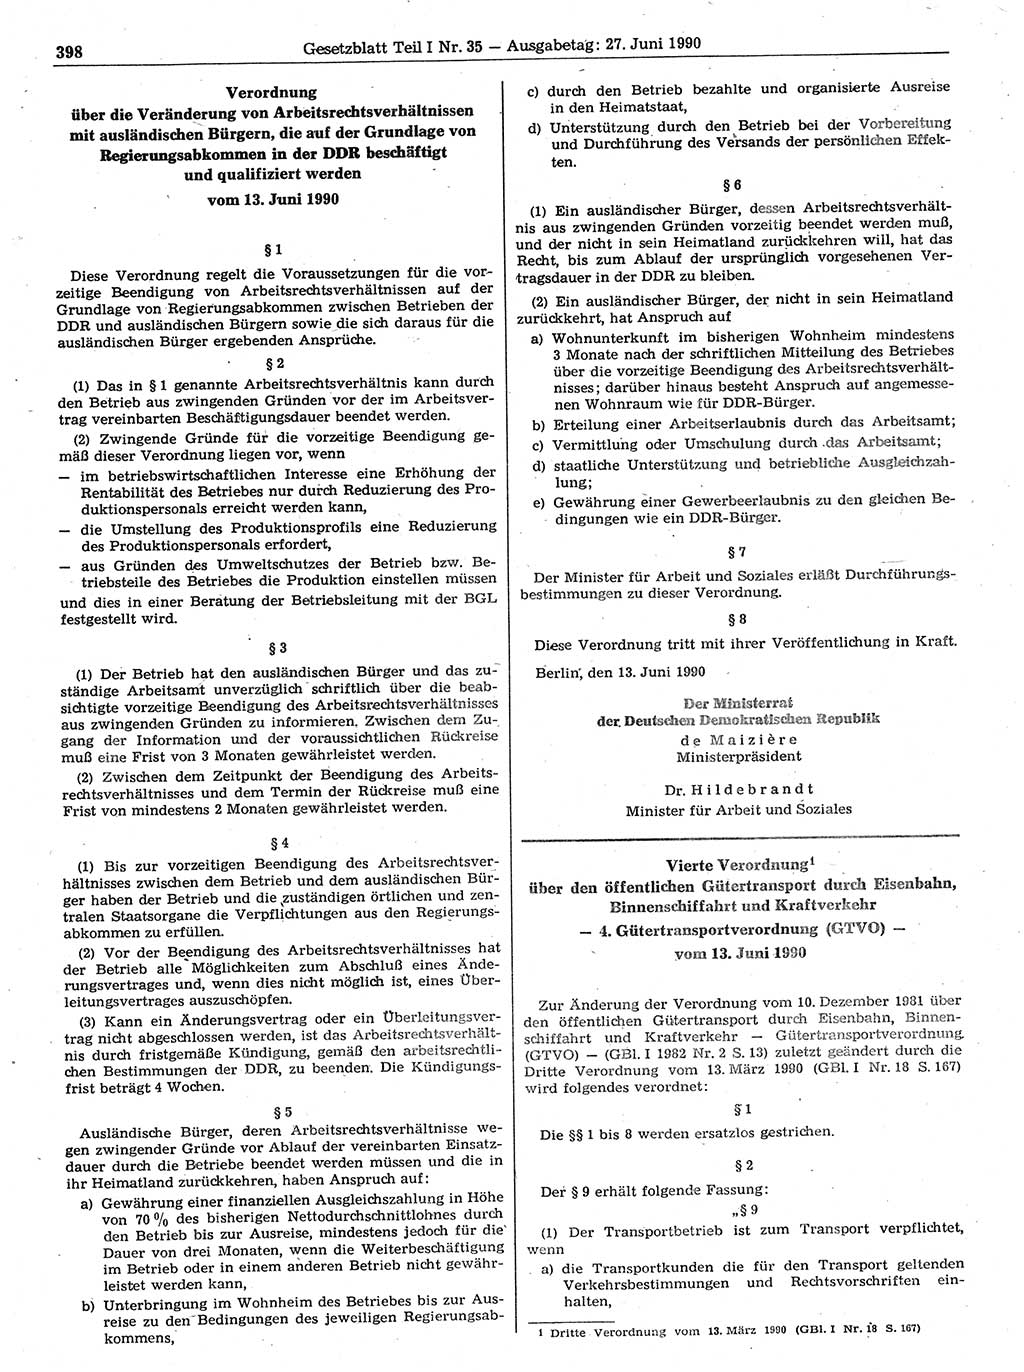 Gesetzblatt (GBl.) der Deutschen Demokratischen Republik (DDR) Teil Ⅰ 1990, Seite 398 (GBl. DDR Ⅰ 1990, S. 398)